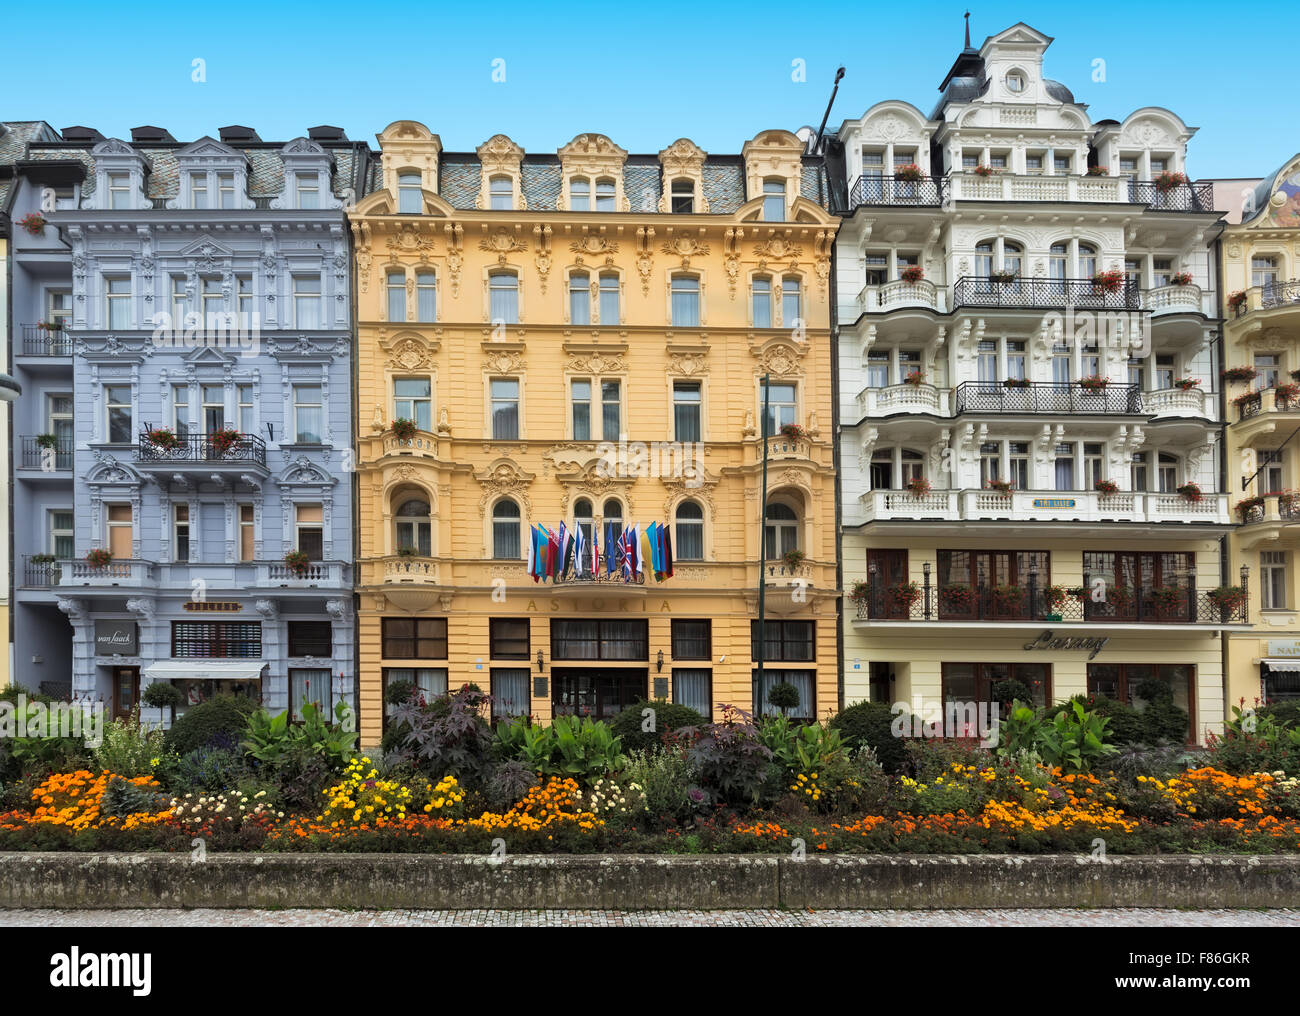 CARLSBAD, REPUBBLICA CECA, Ottobre 10, 2015 - edificio storico e nel centro cittadino della città termale di Karlovy Vary (Carlsbad) Foto Stock